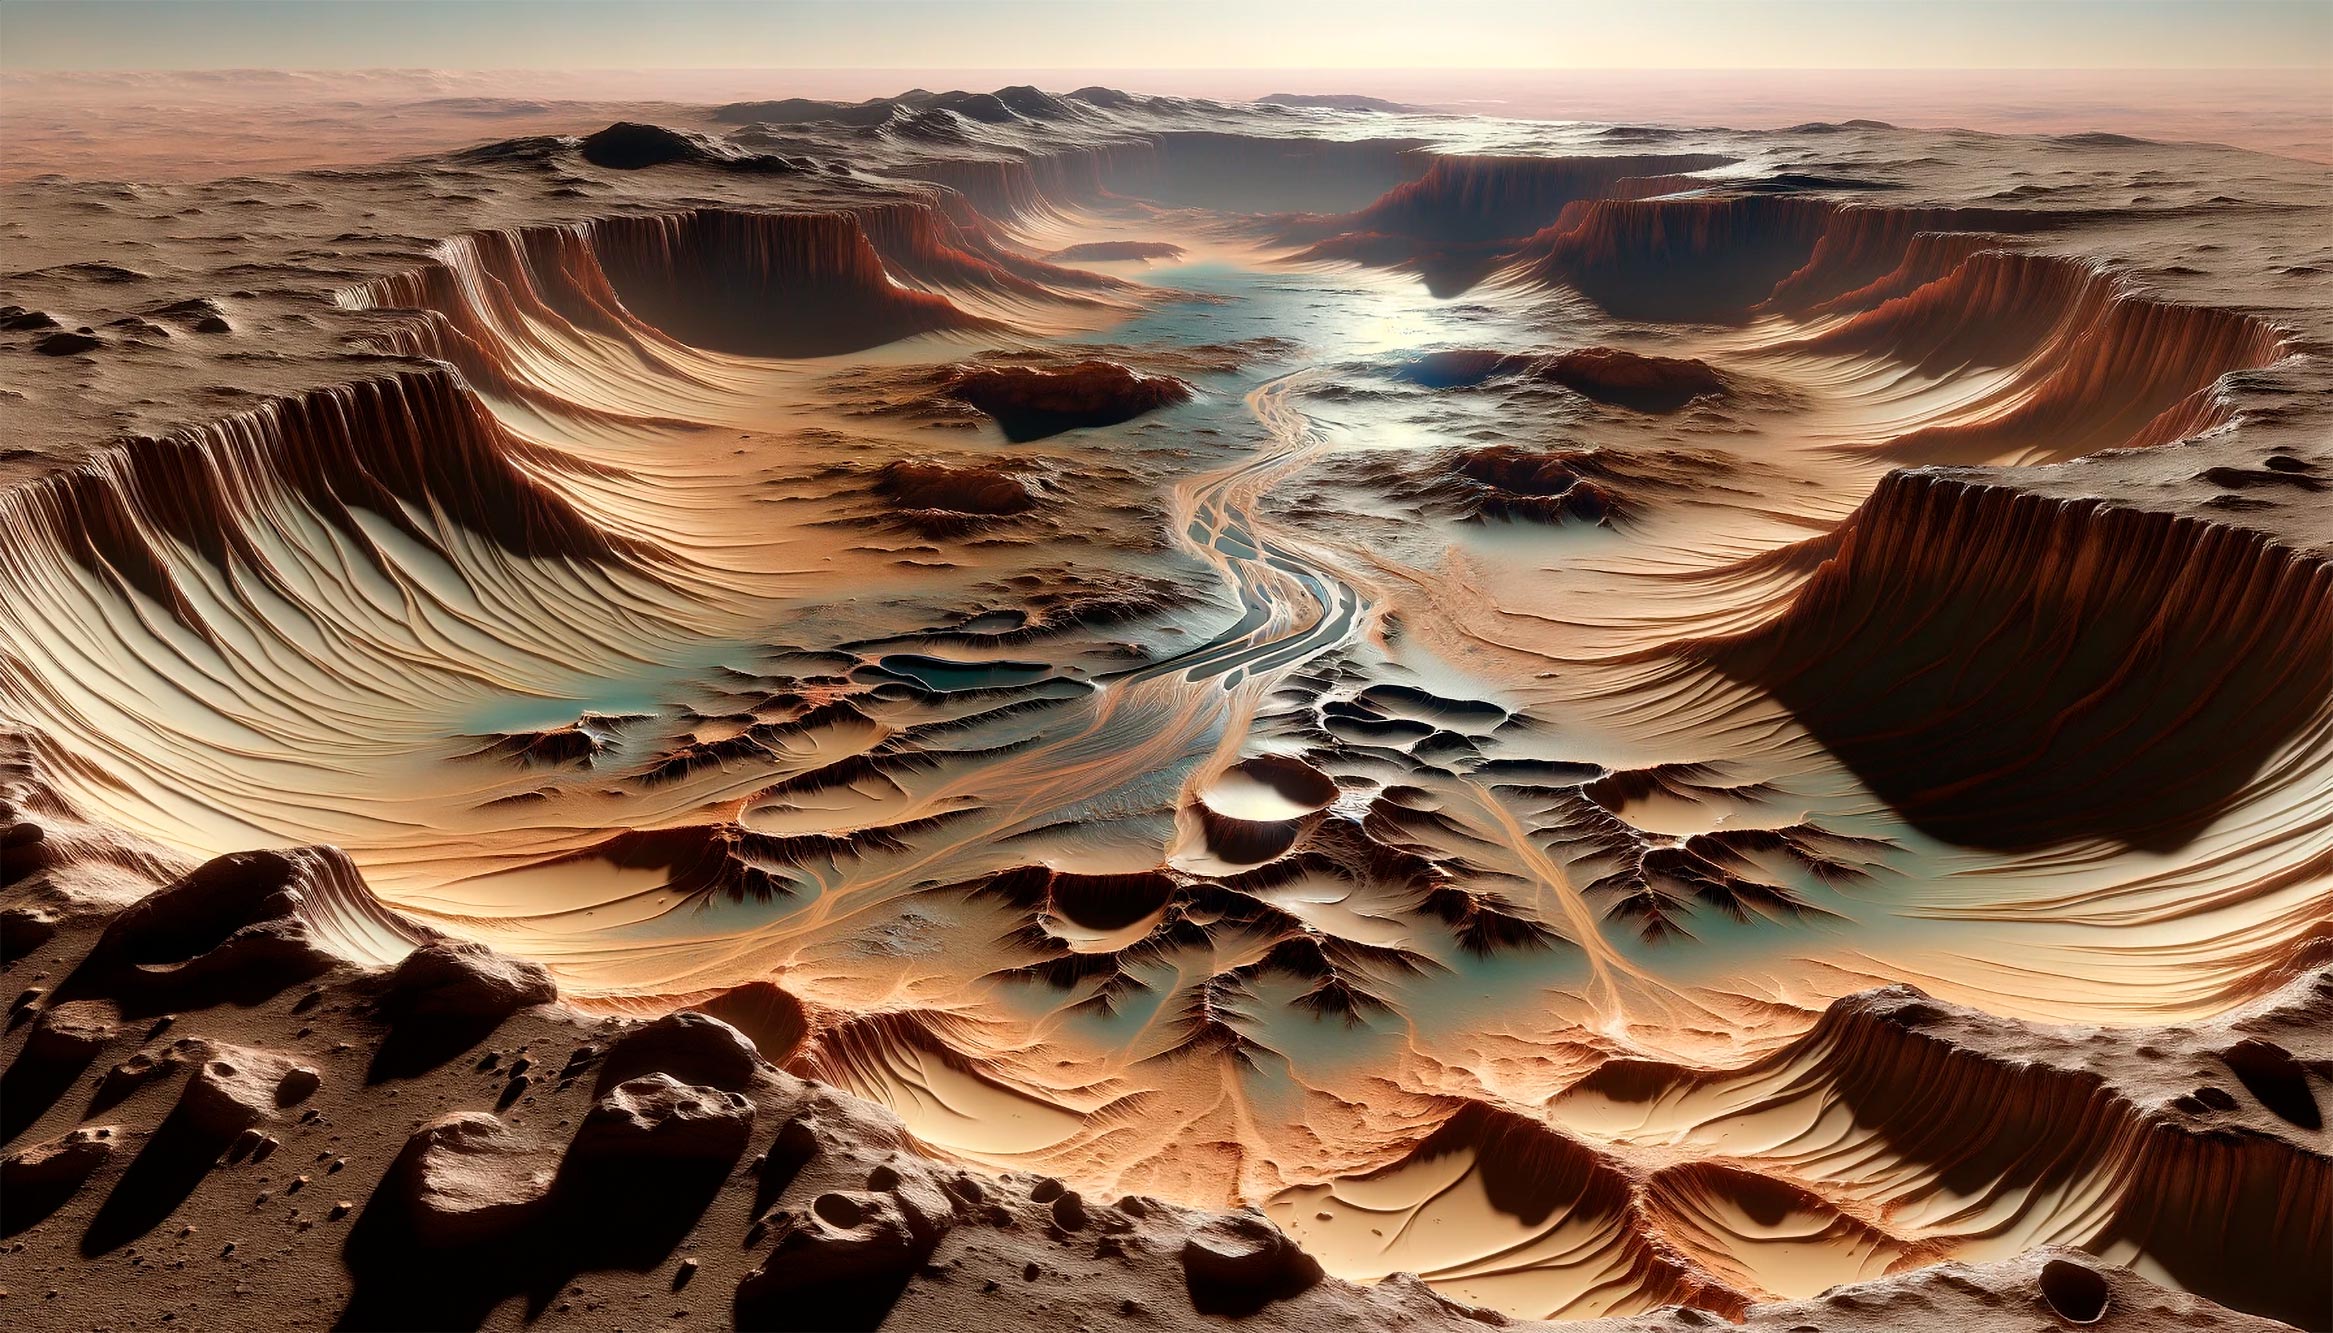 NASA’nın Perseverance gezgini antik Mars gölünün sırlarını araştırıyor